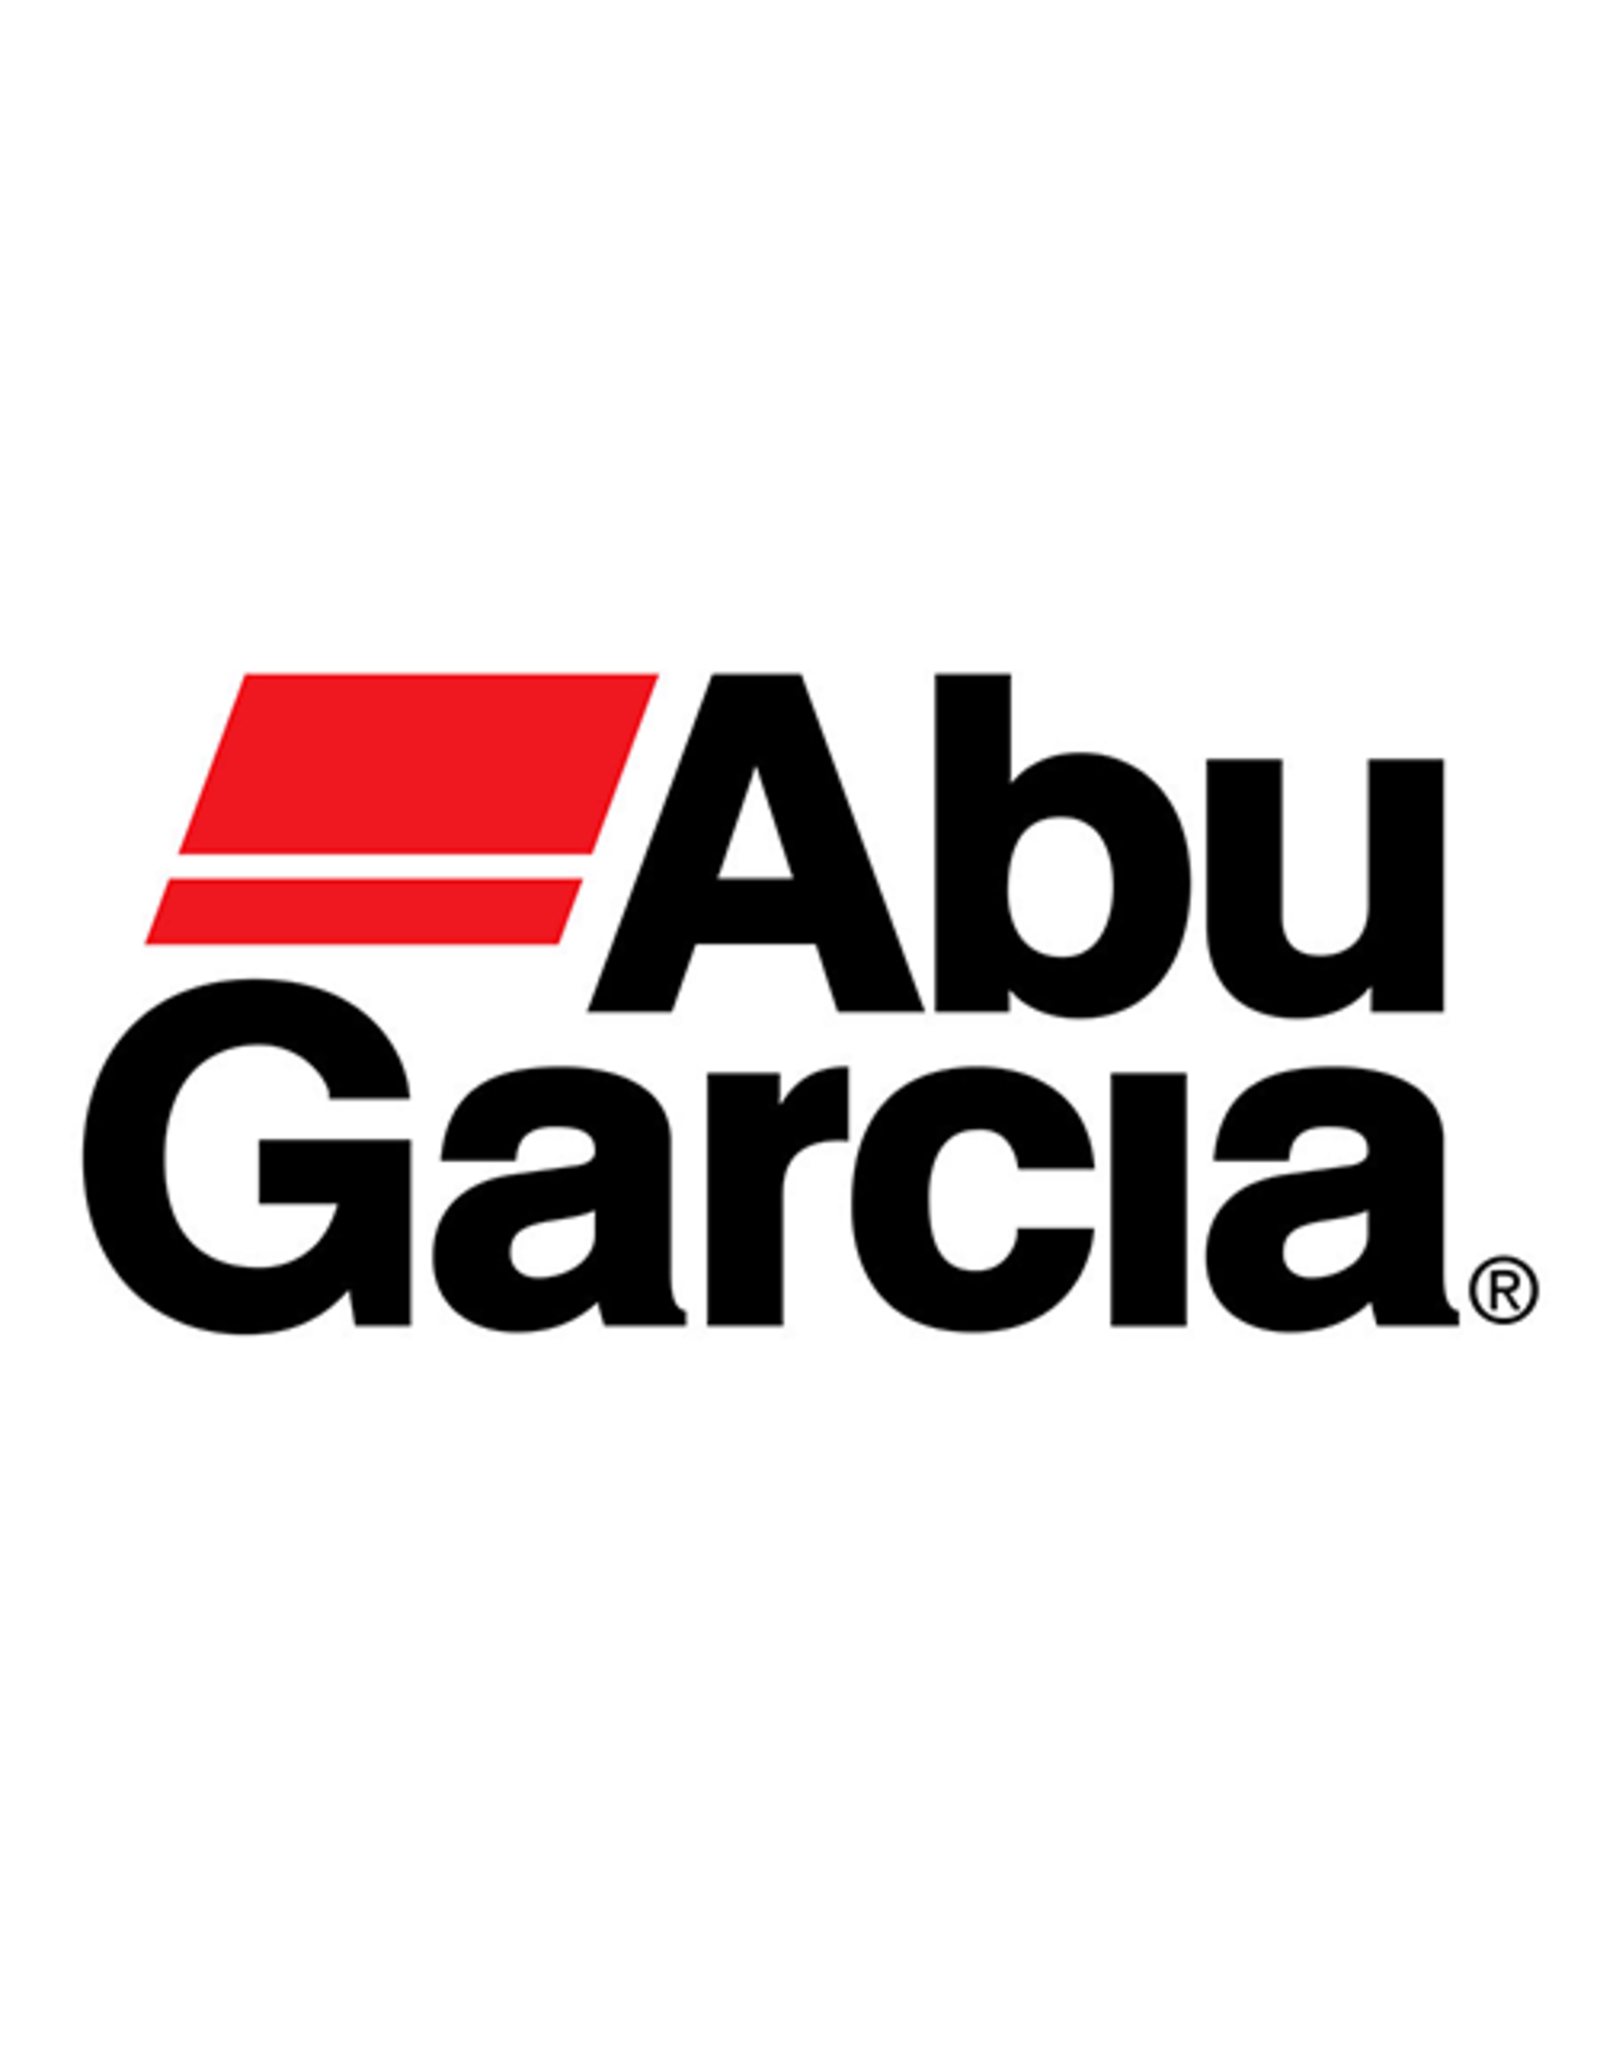 Abu Garcia 811549  FRAME